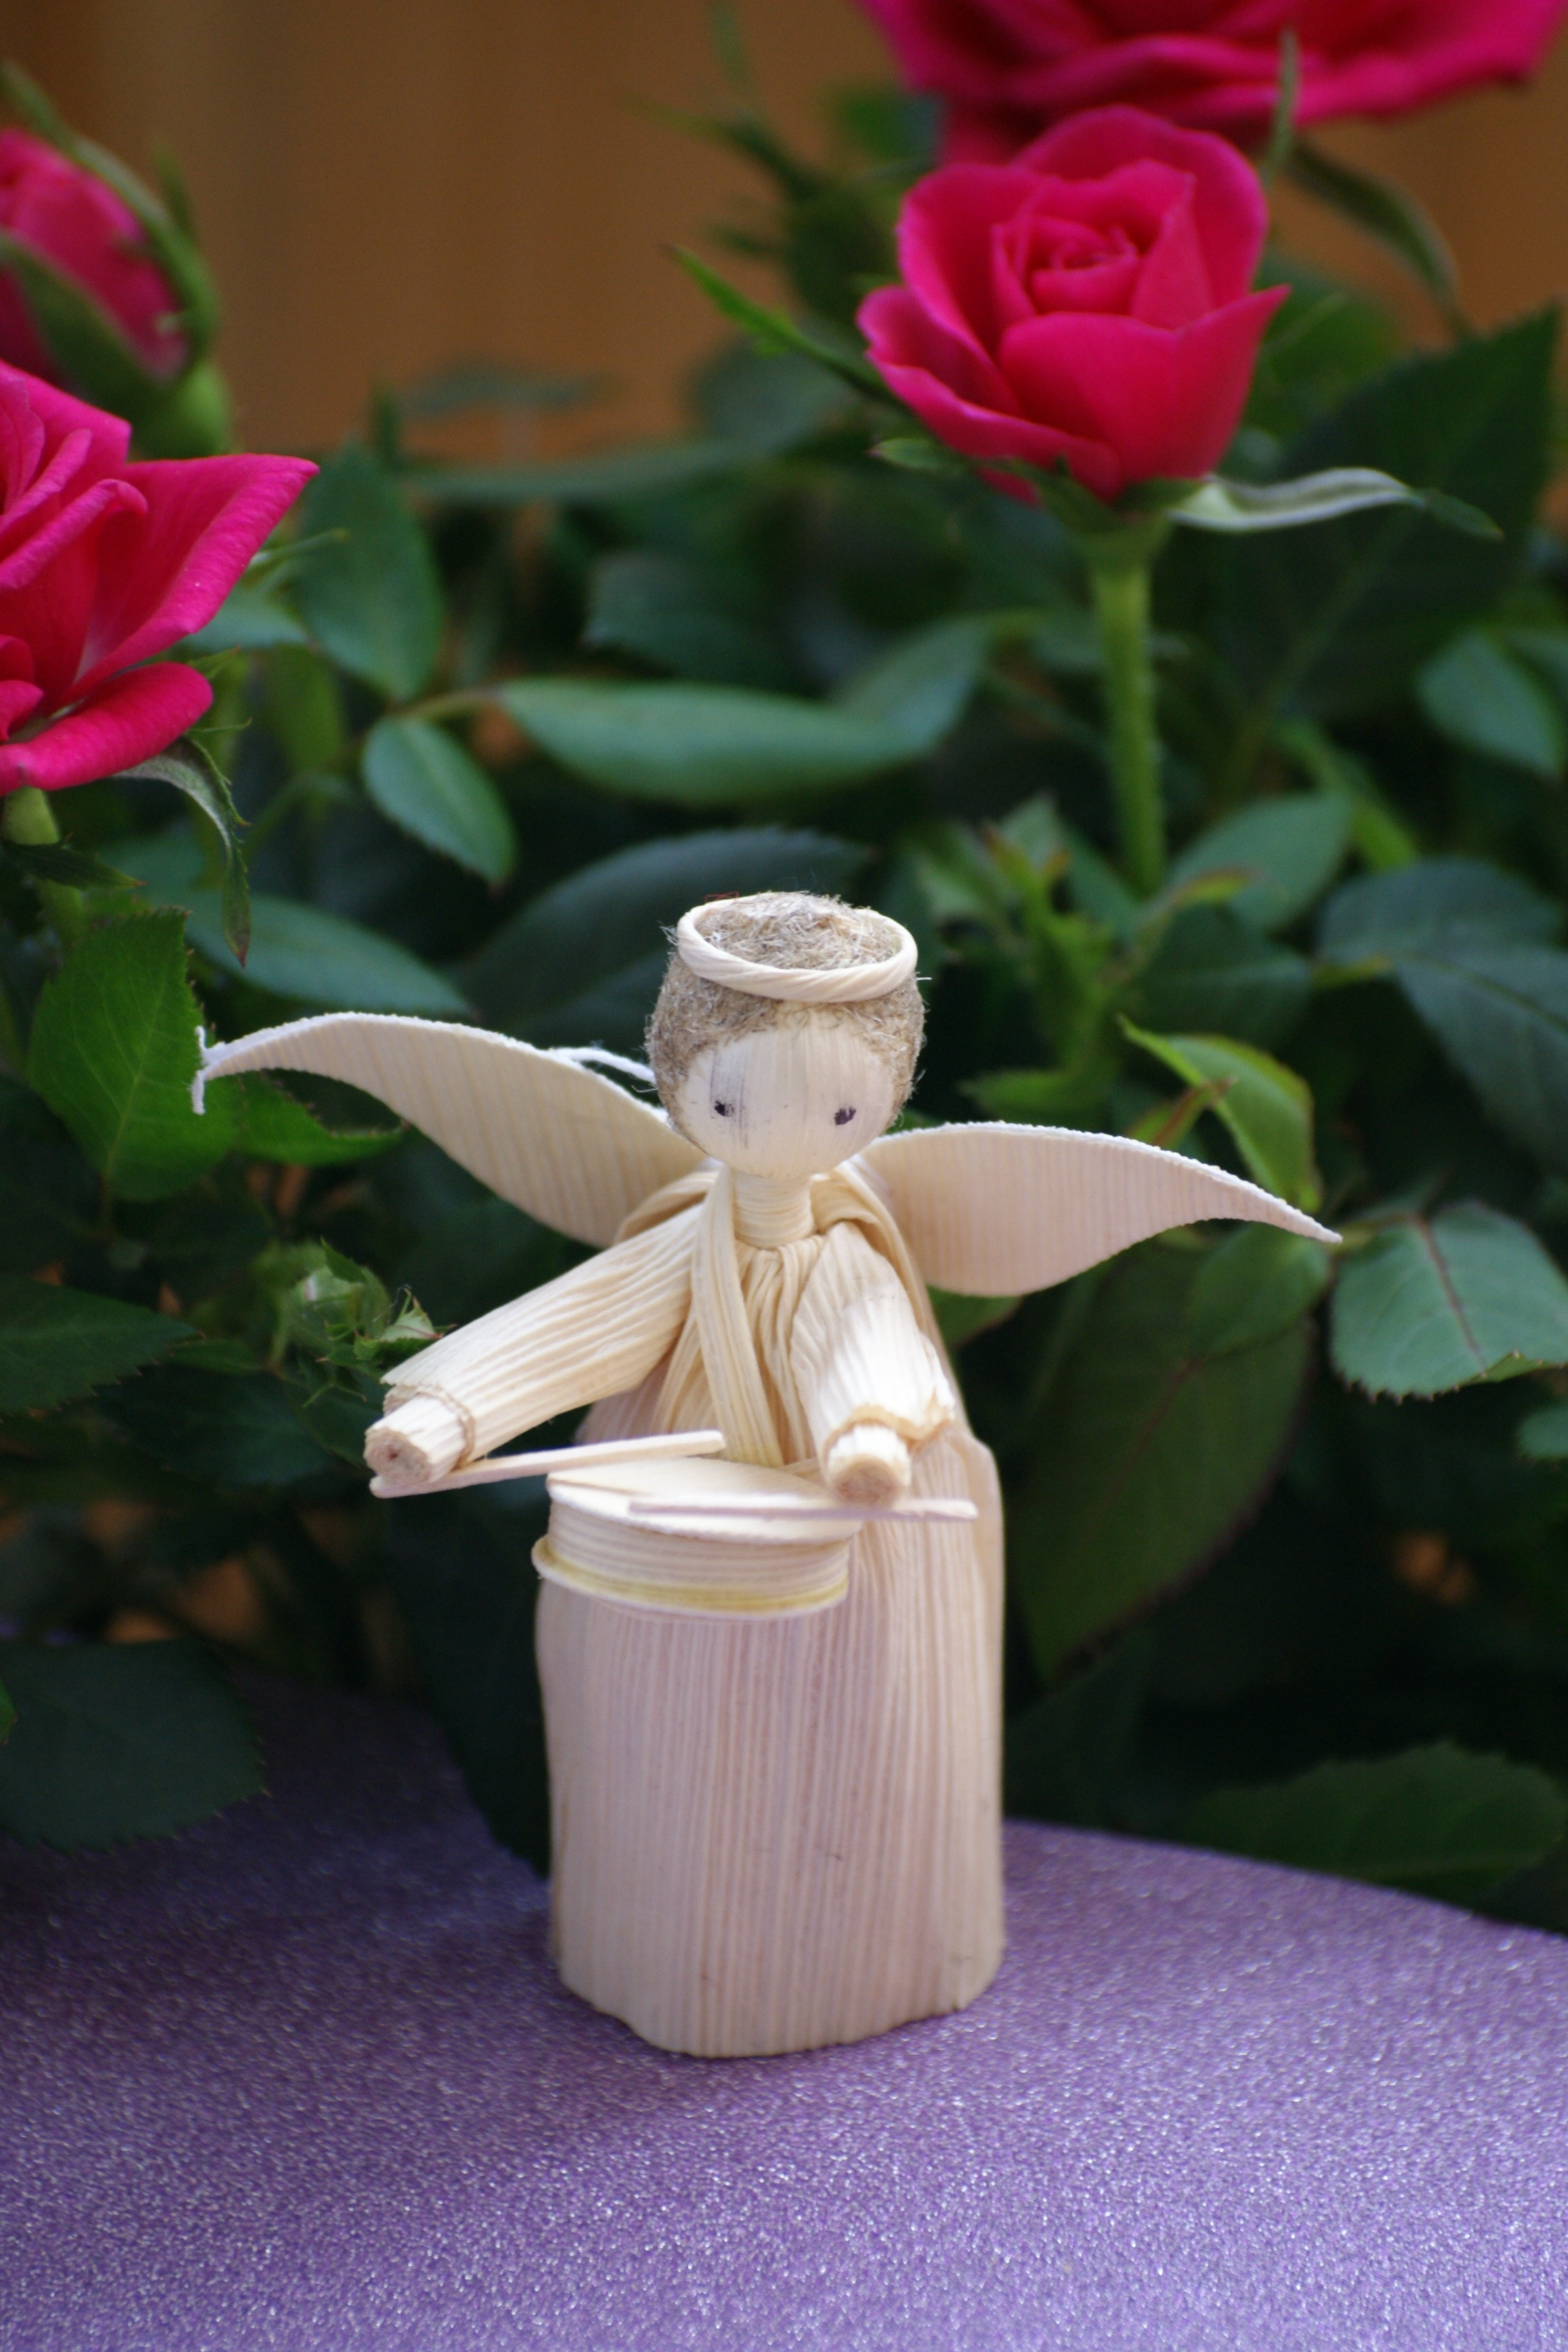 beige angel playing drum stick figurine